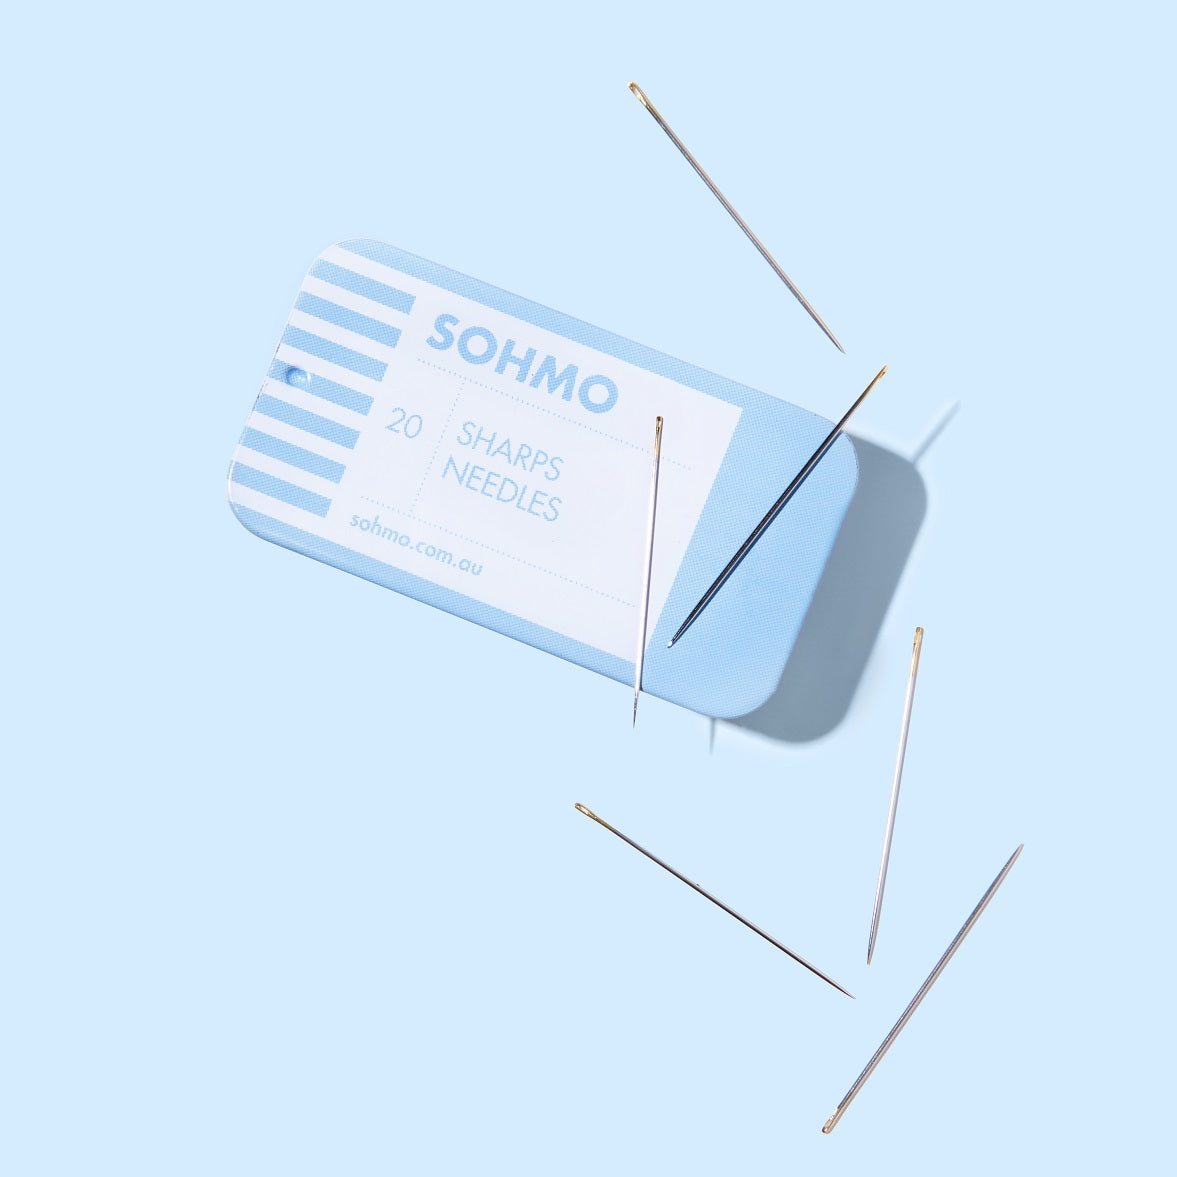 SOHMO Sharps Needles made in Japan